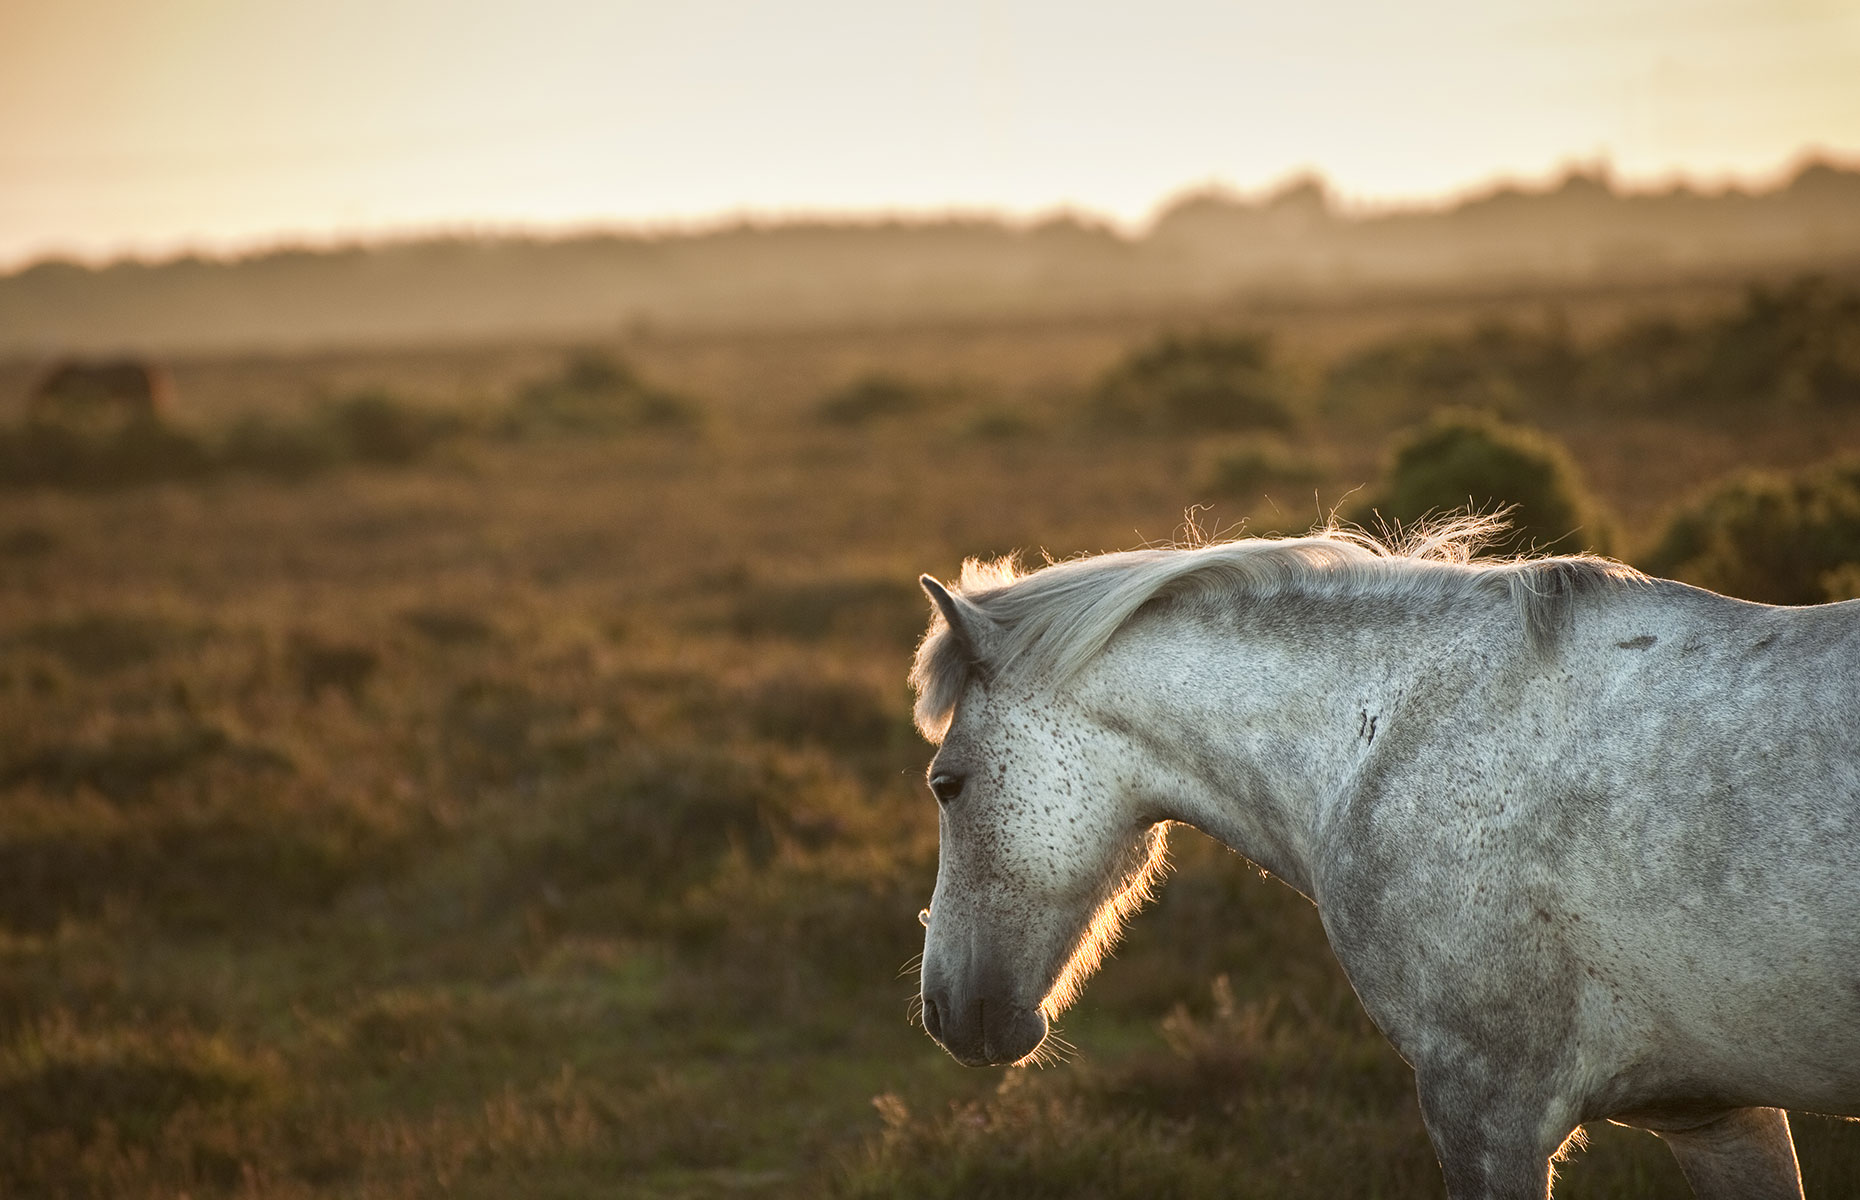 Ponies in Exmoor National Park (Image: Matt Gibsonn/Shutterstock)